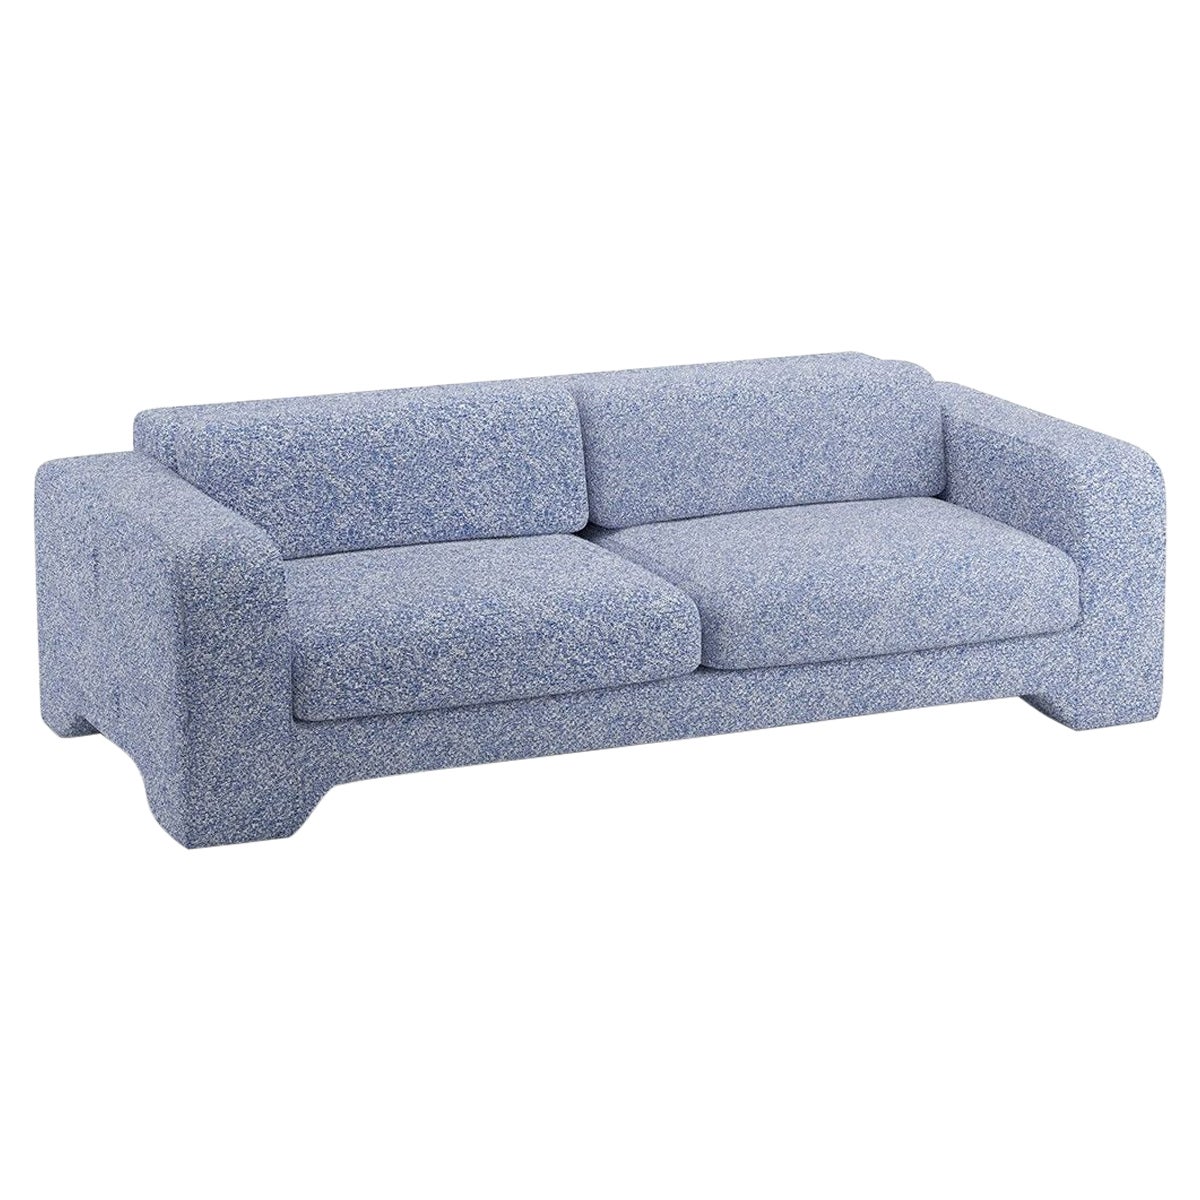 Popus Editions Giovanna 3 Seater Sofa in Ocean Zanzi Linen Fabric